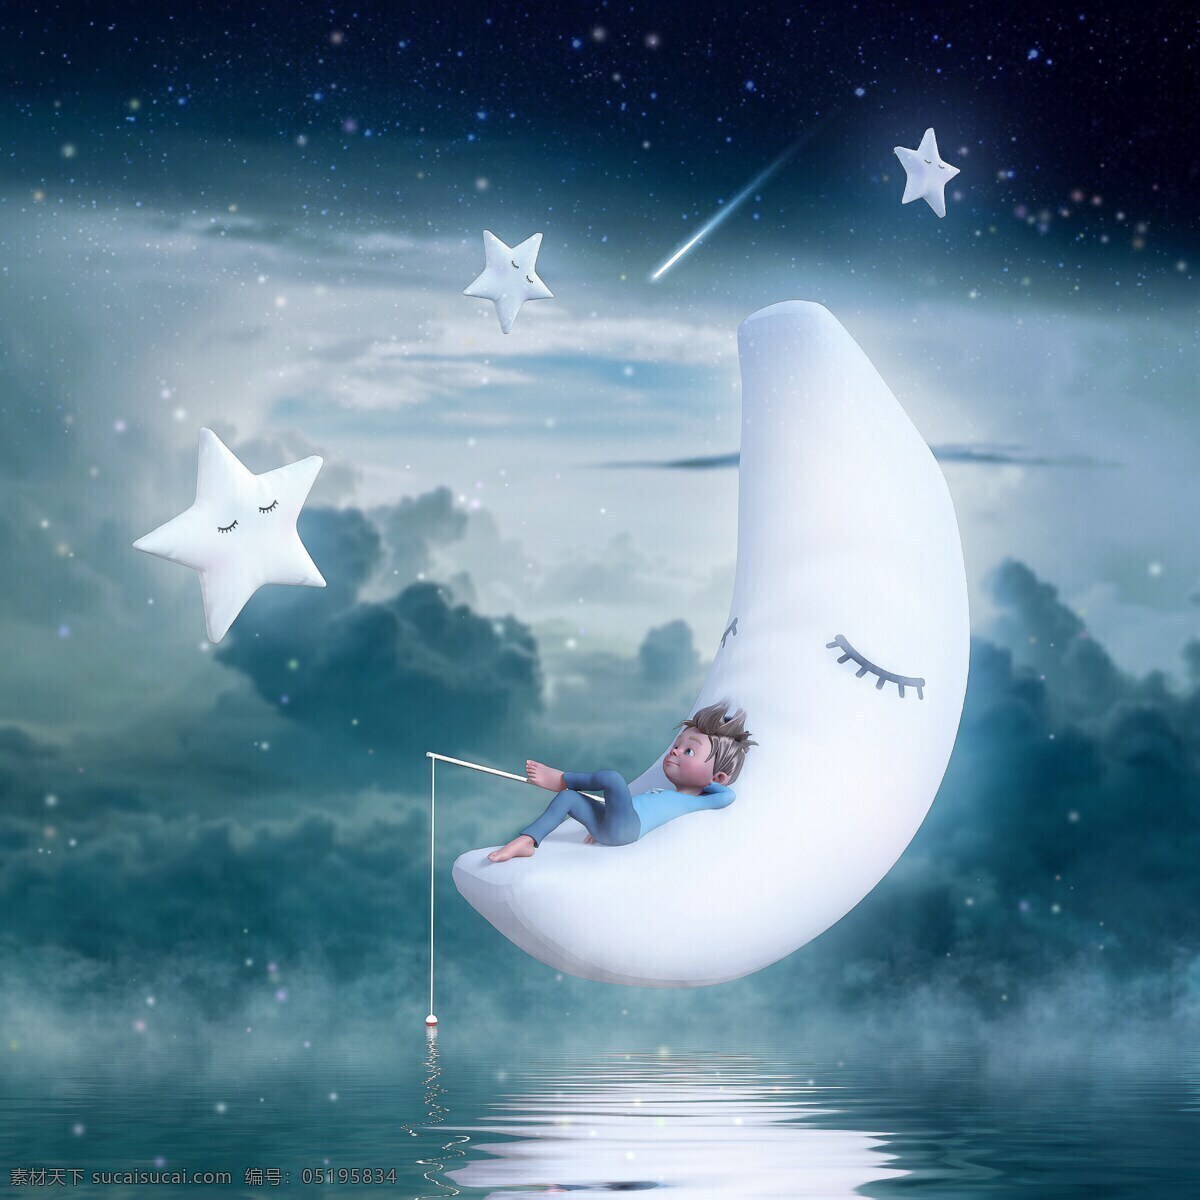 梦幻世界图片 幻想世界 星星 小男孩 月亮 垂钓 背景花纹 素材设计 动漫动画